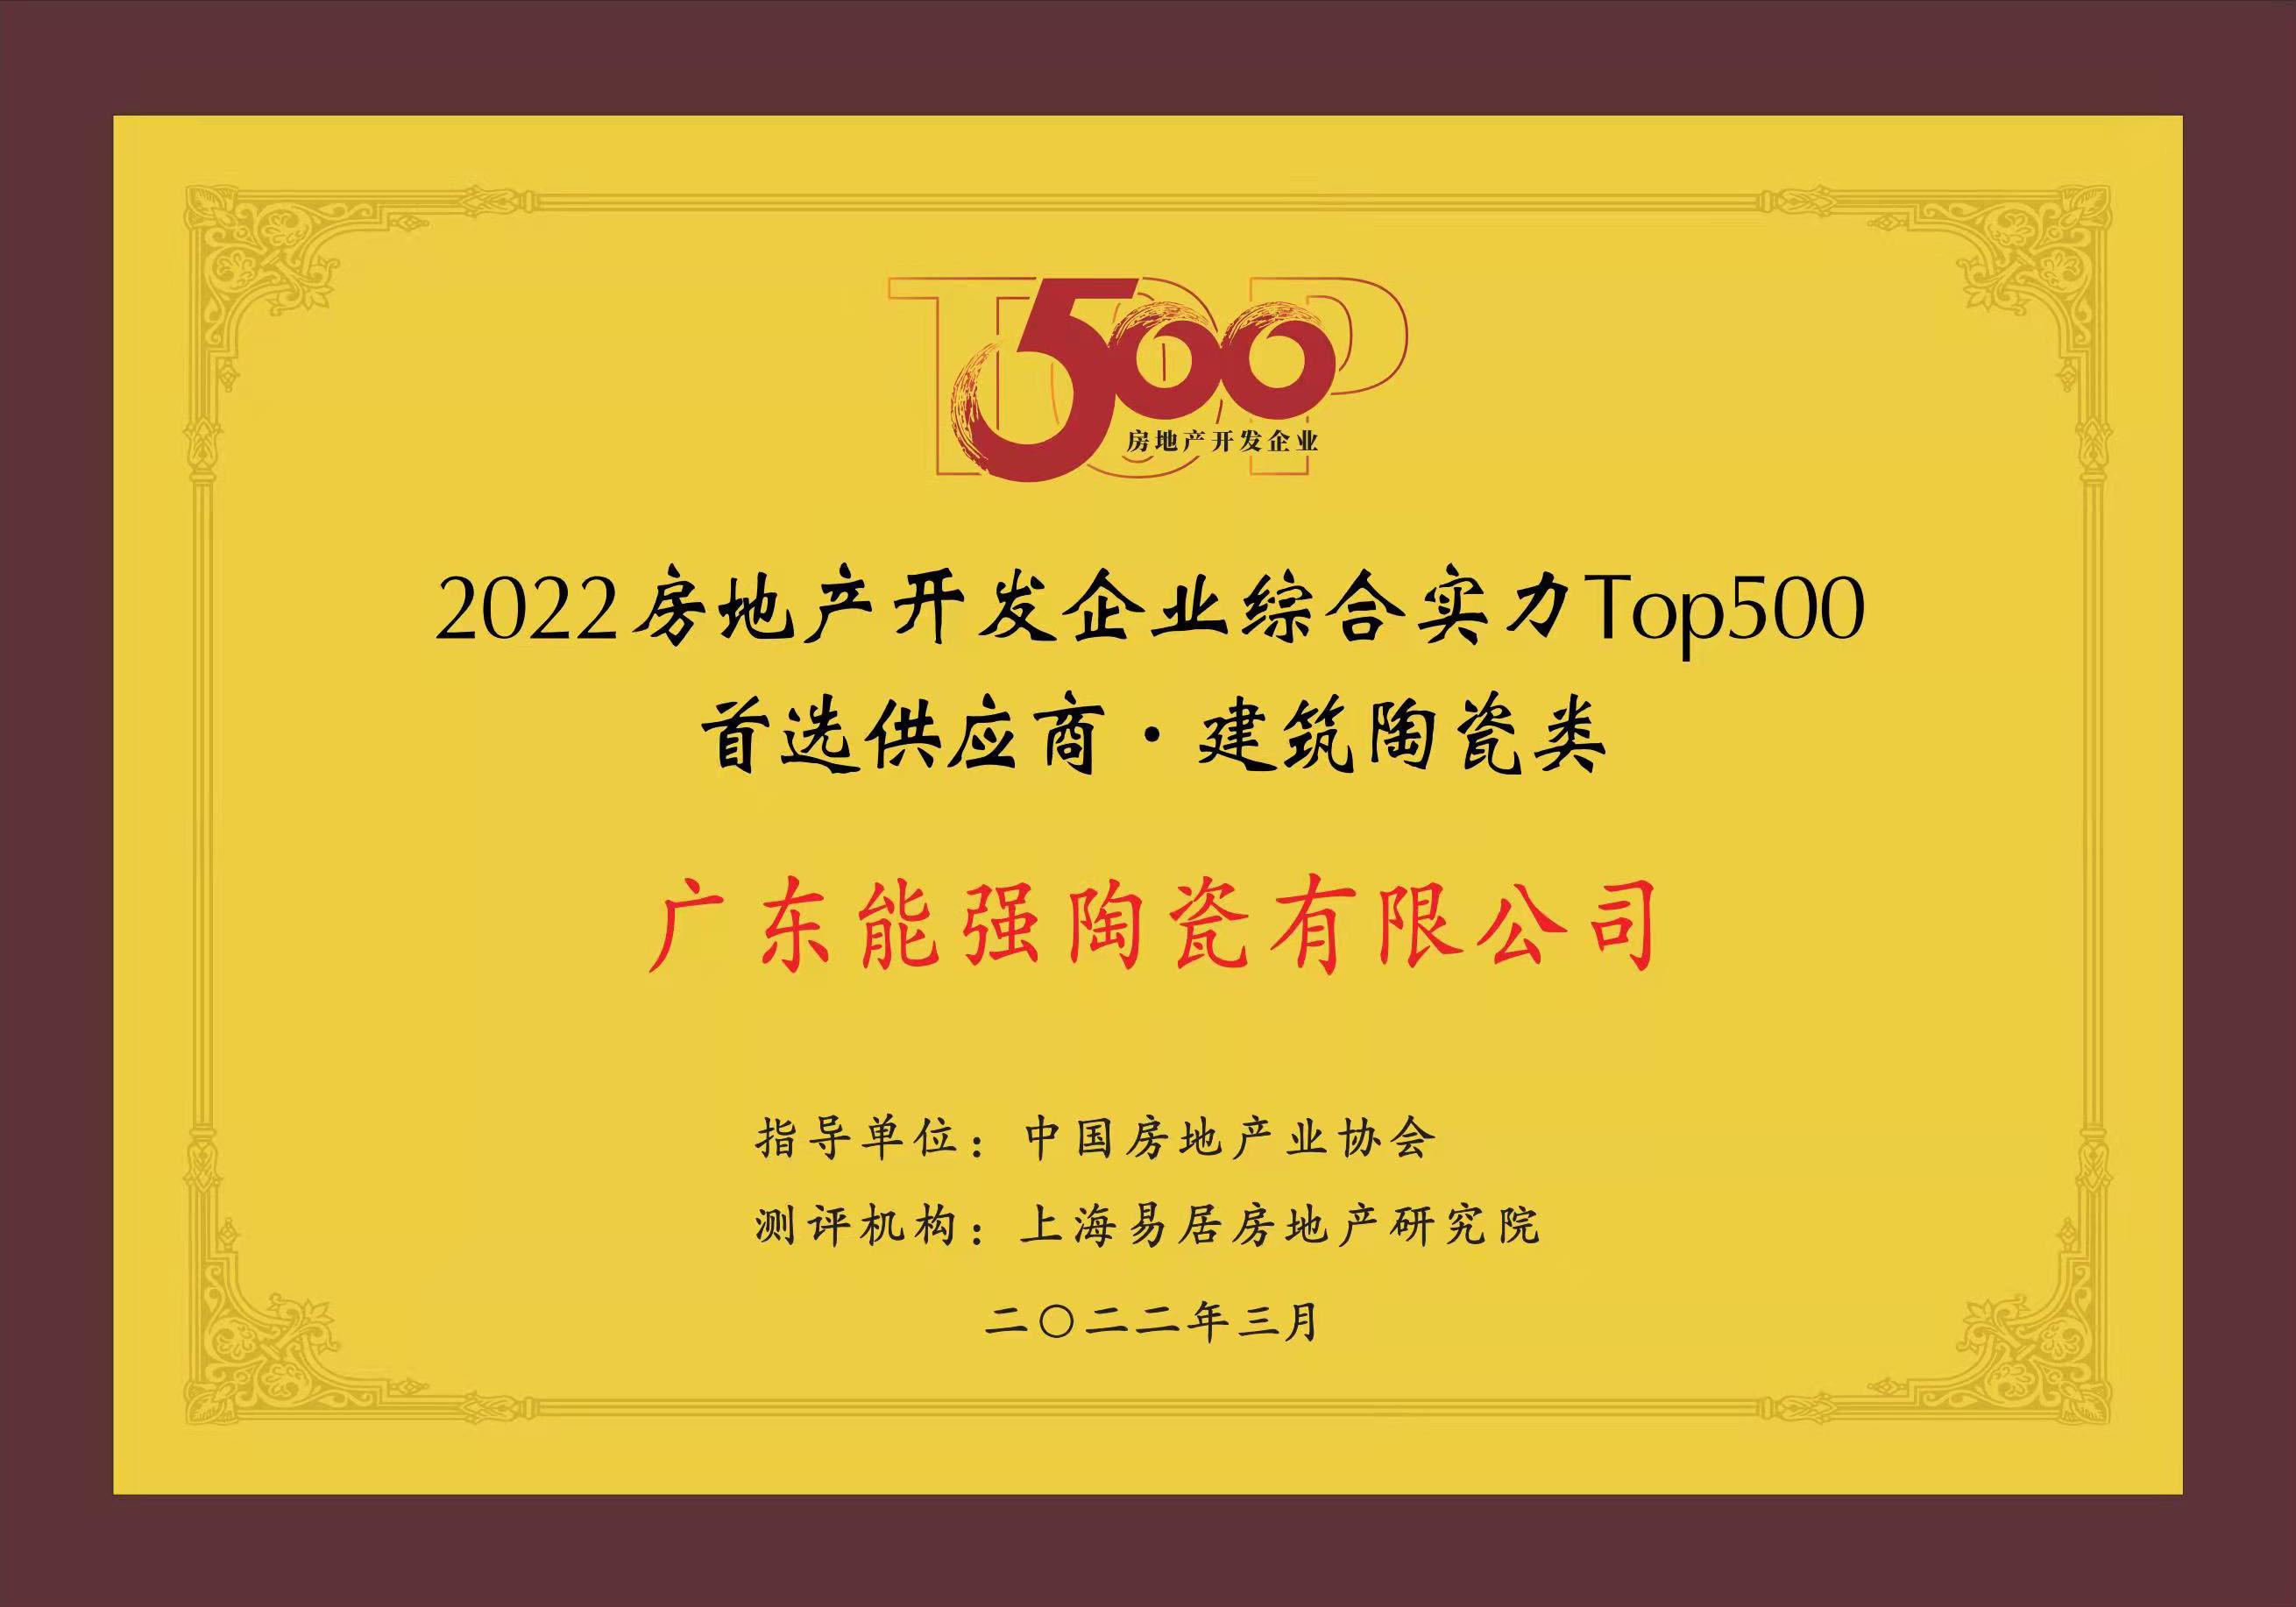 中国TOP500房地产开发企业首选供应商·建筑陶瓷类